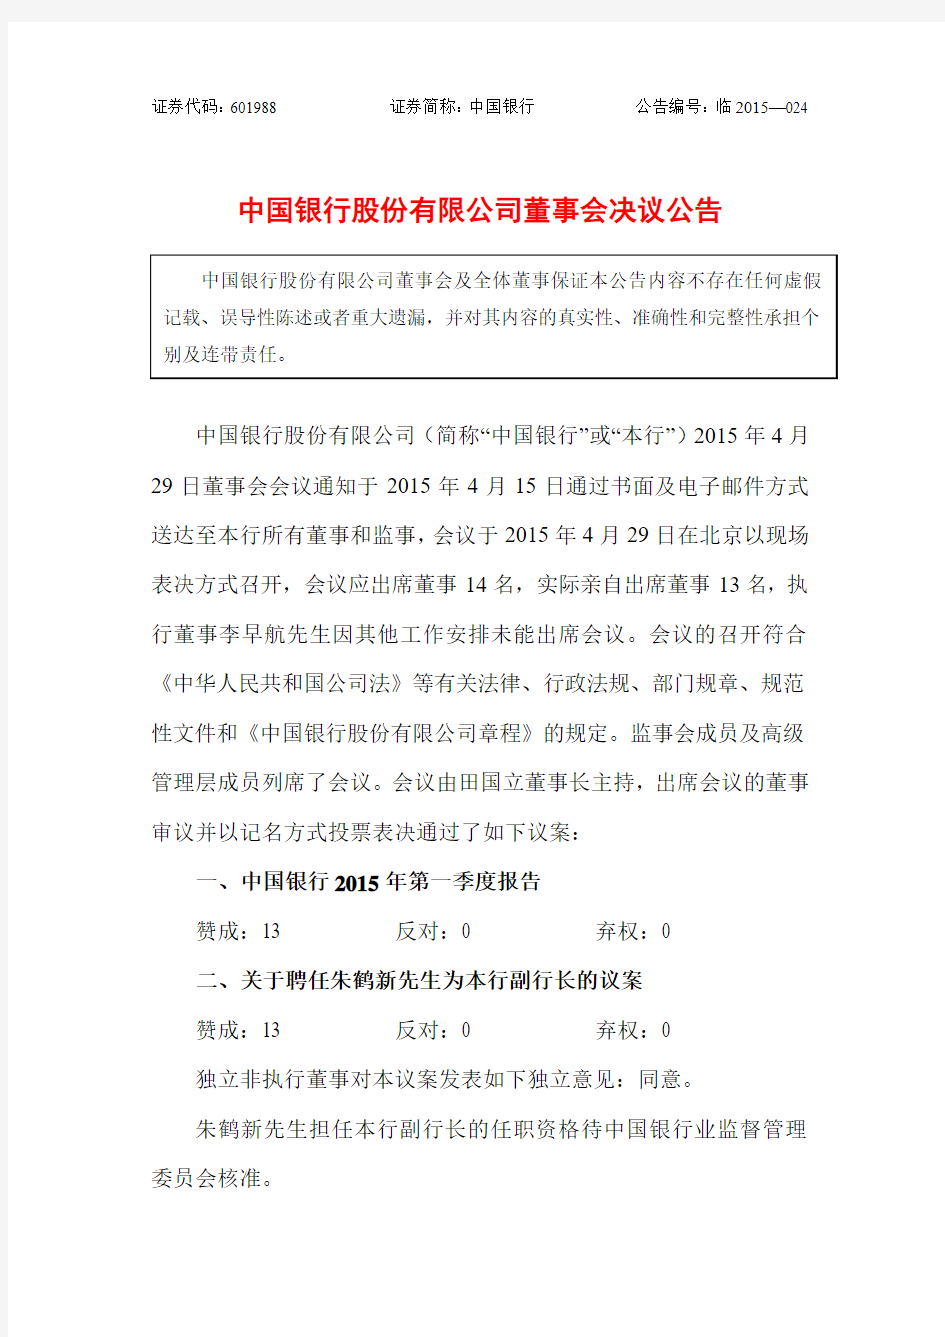 中国银行股份有限公司董事会决议公告